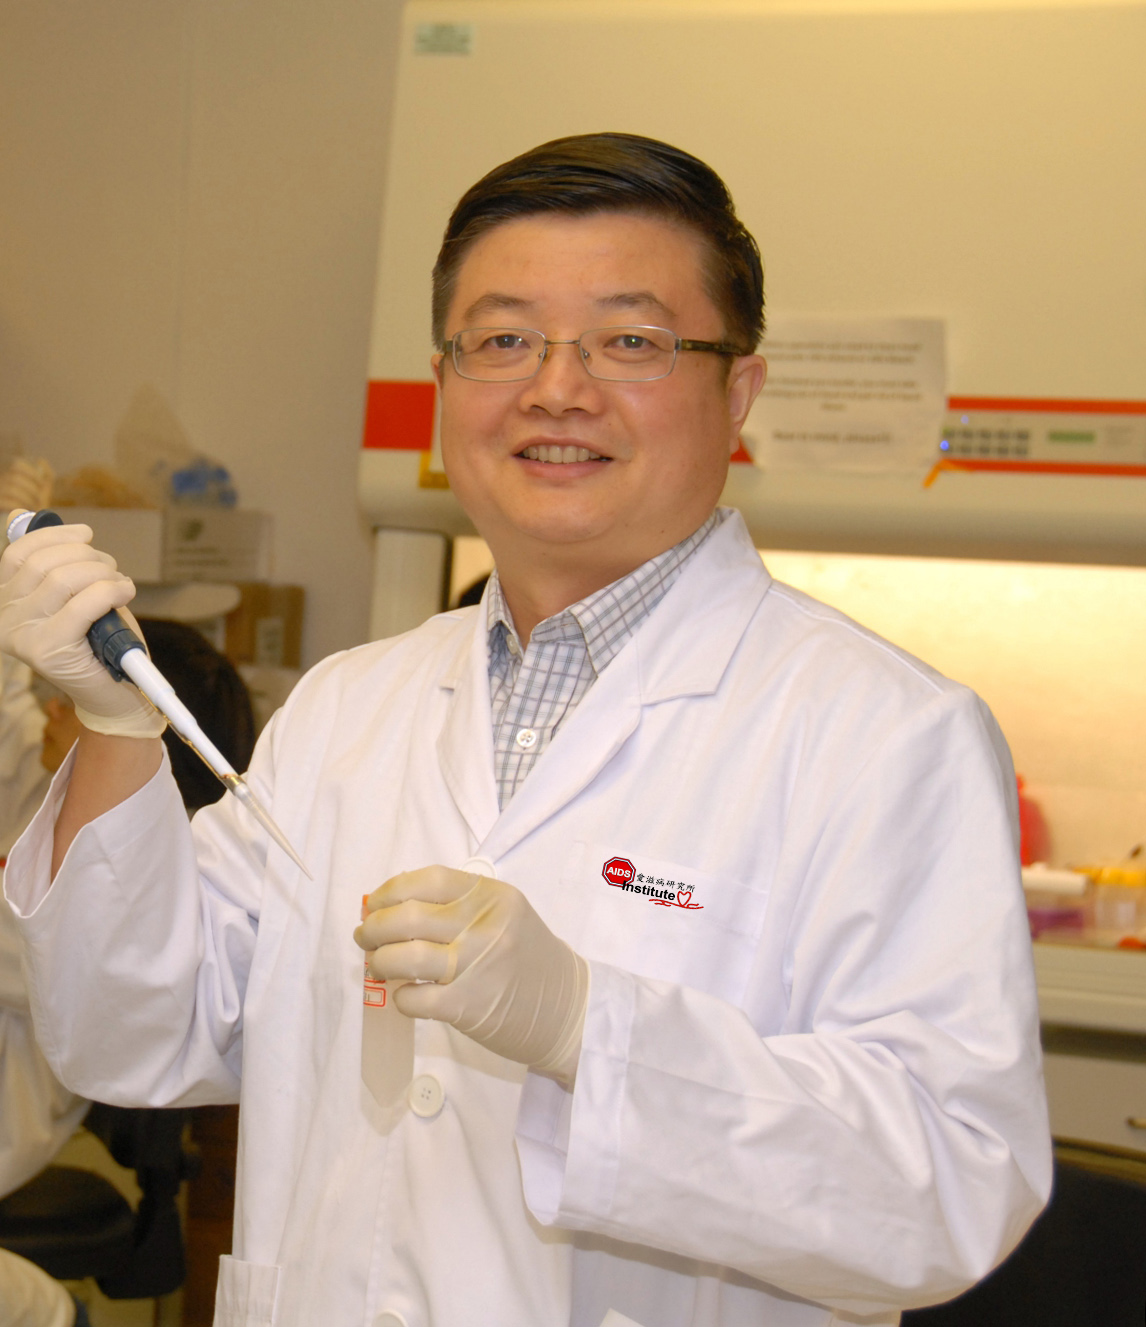 Professor Zhiwei Chen